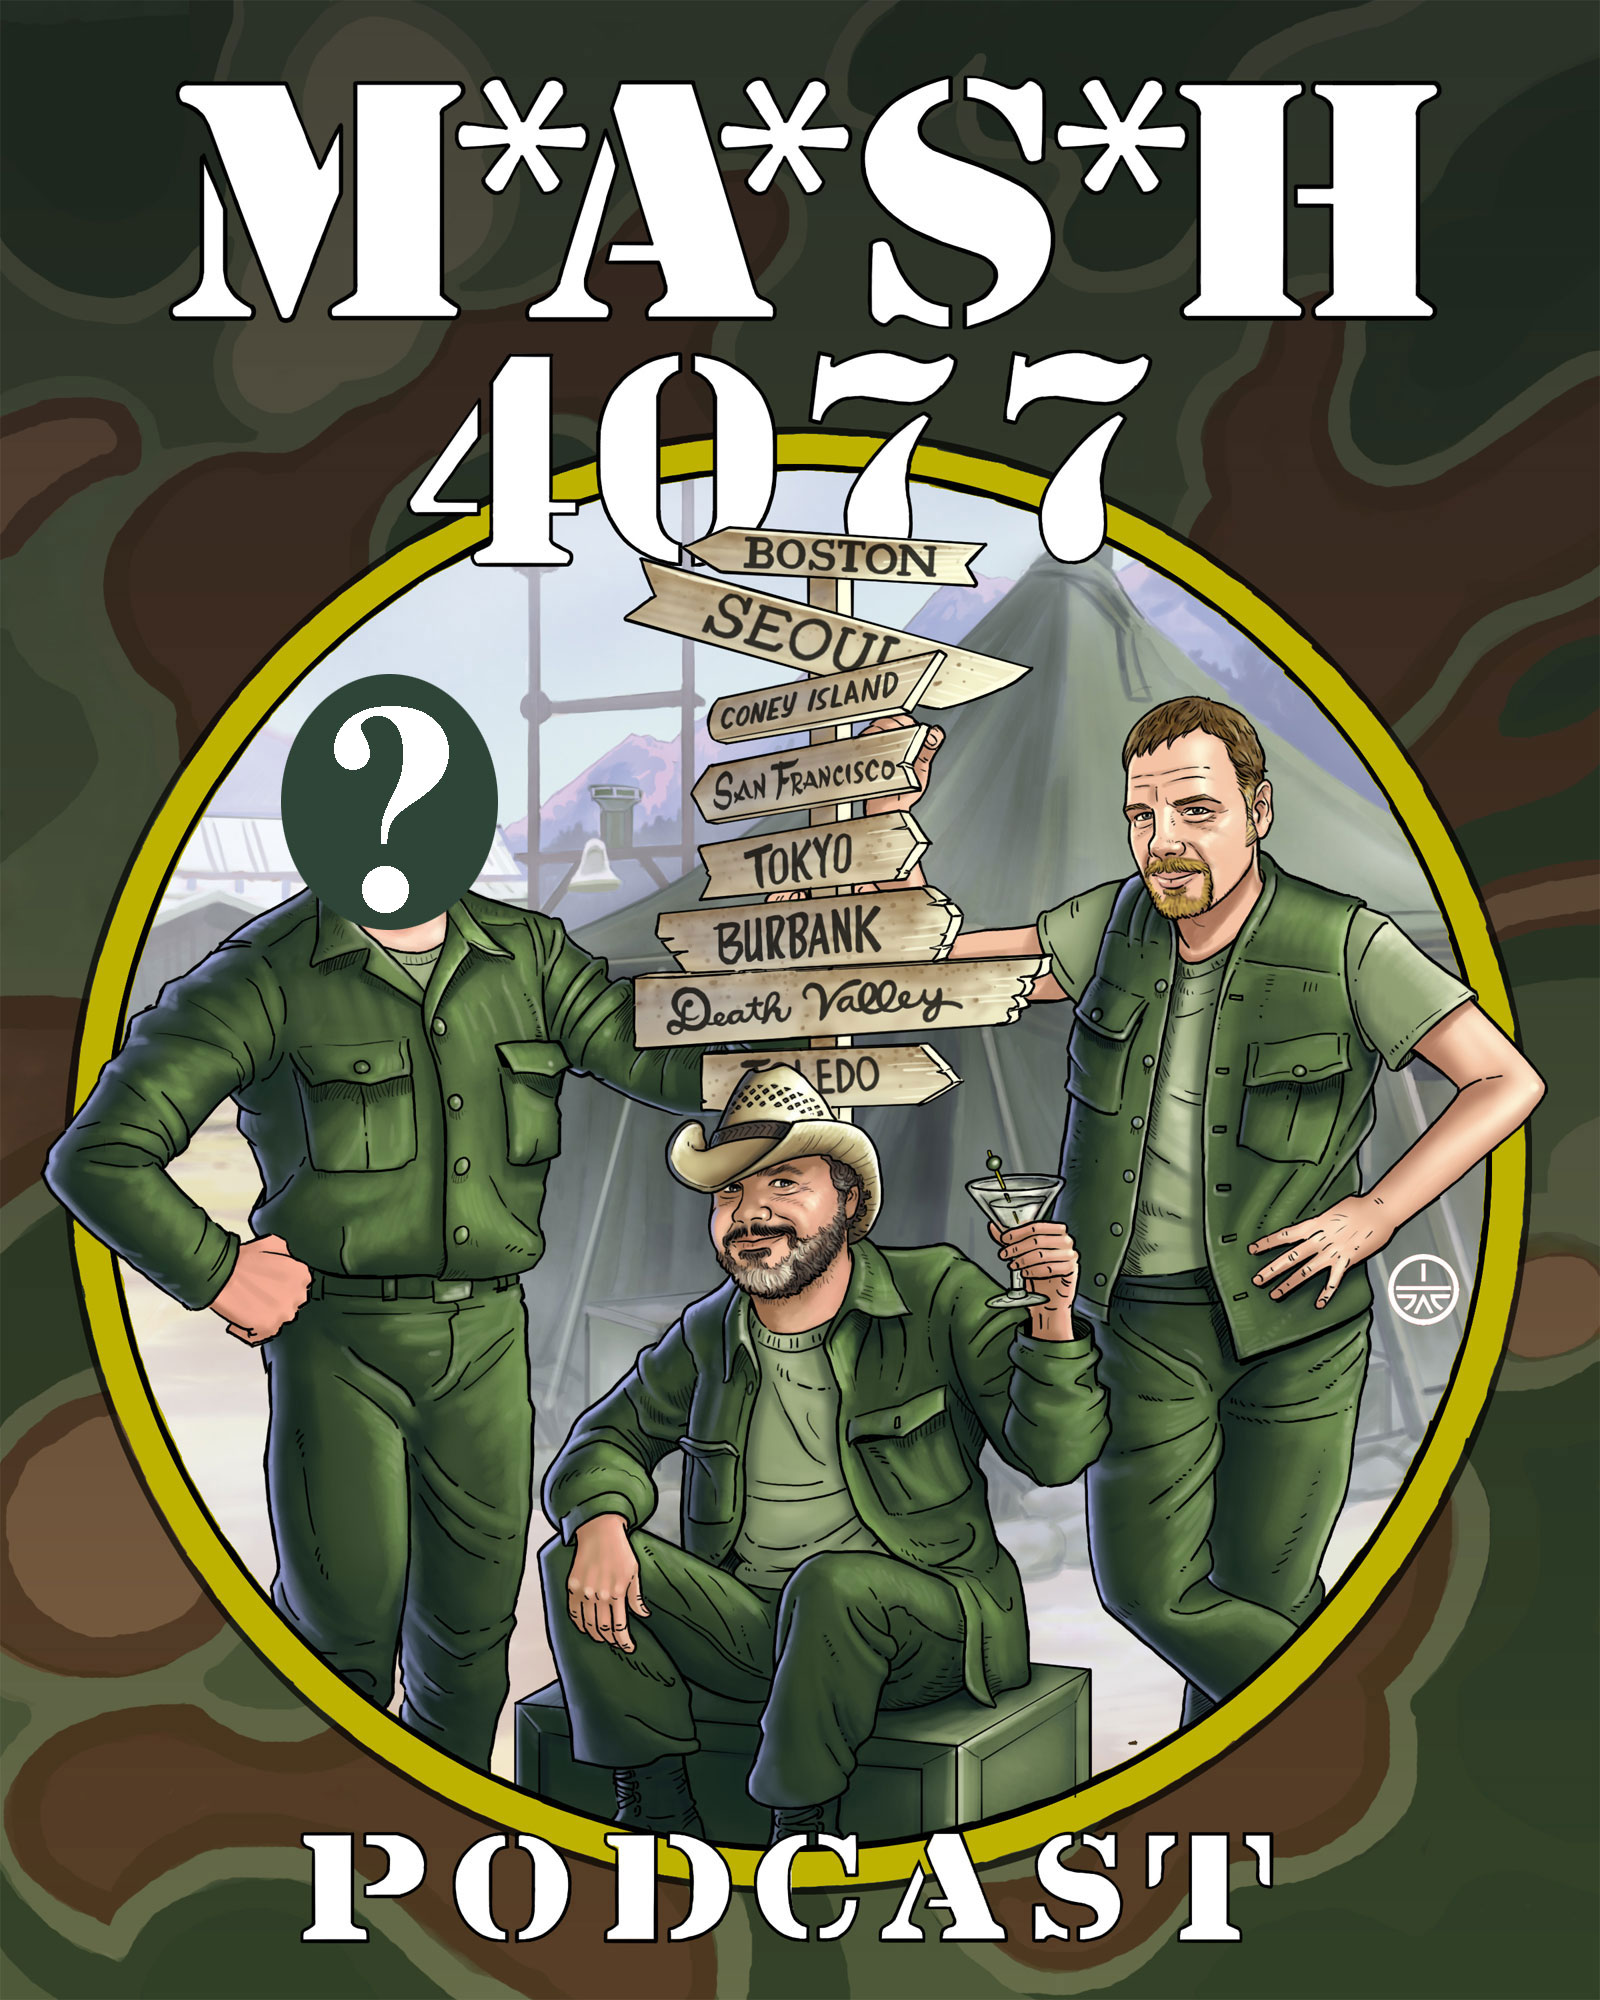 MASH 4077 Podcast Episode 150